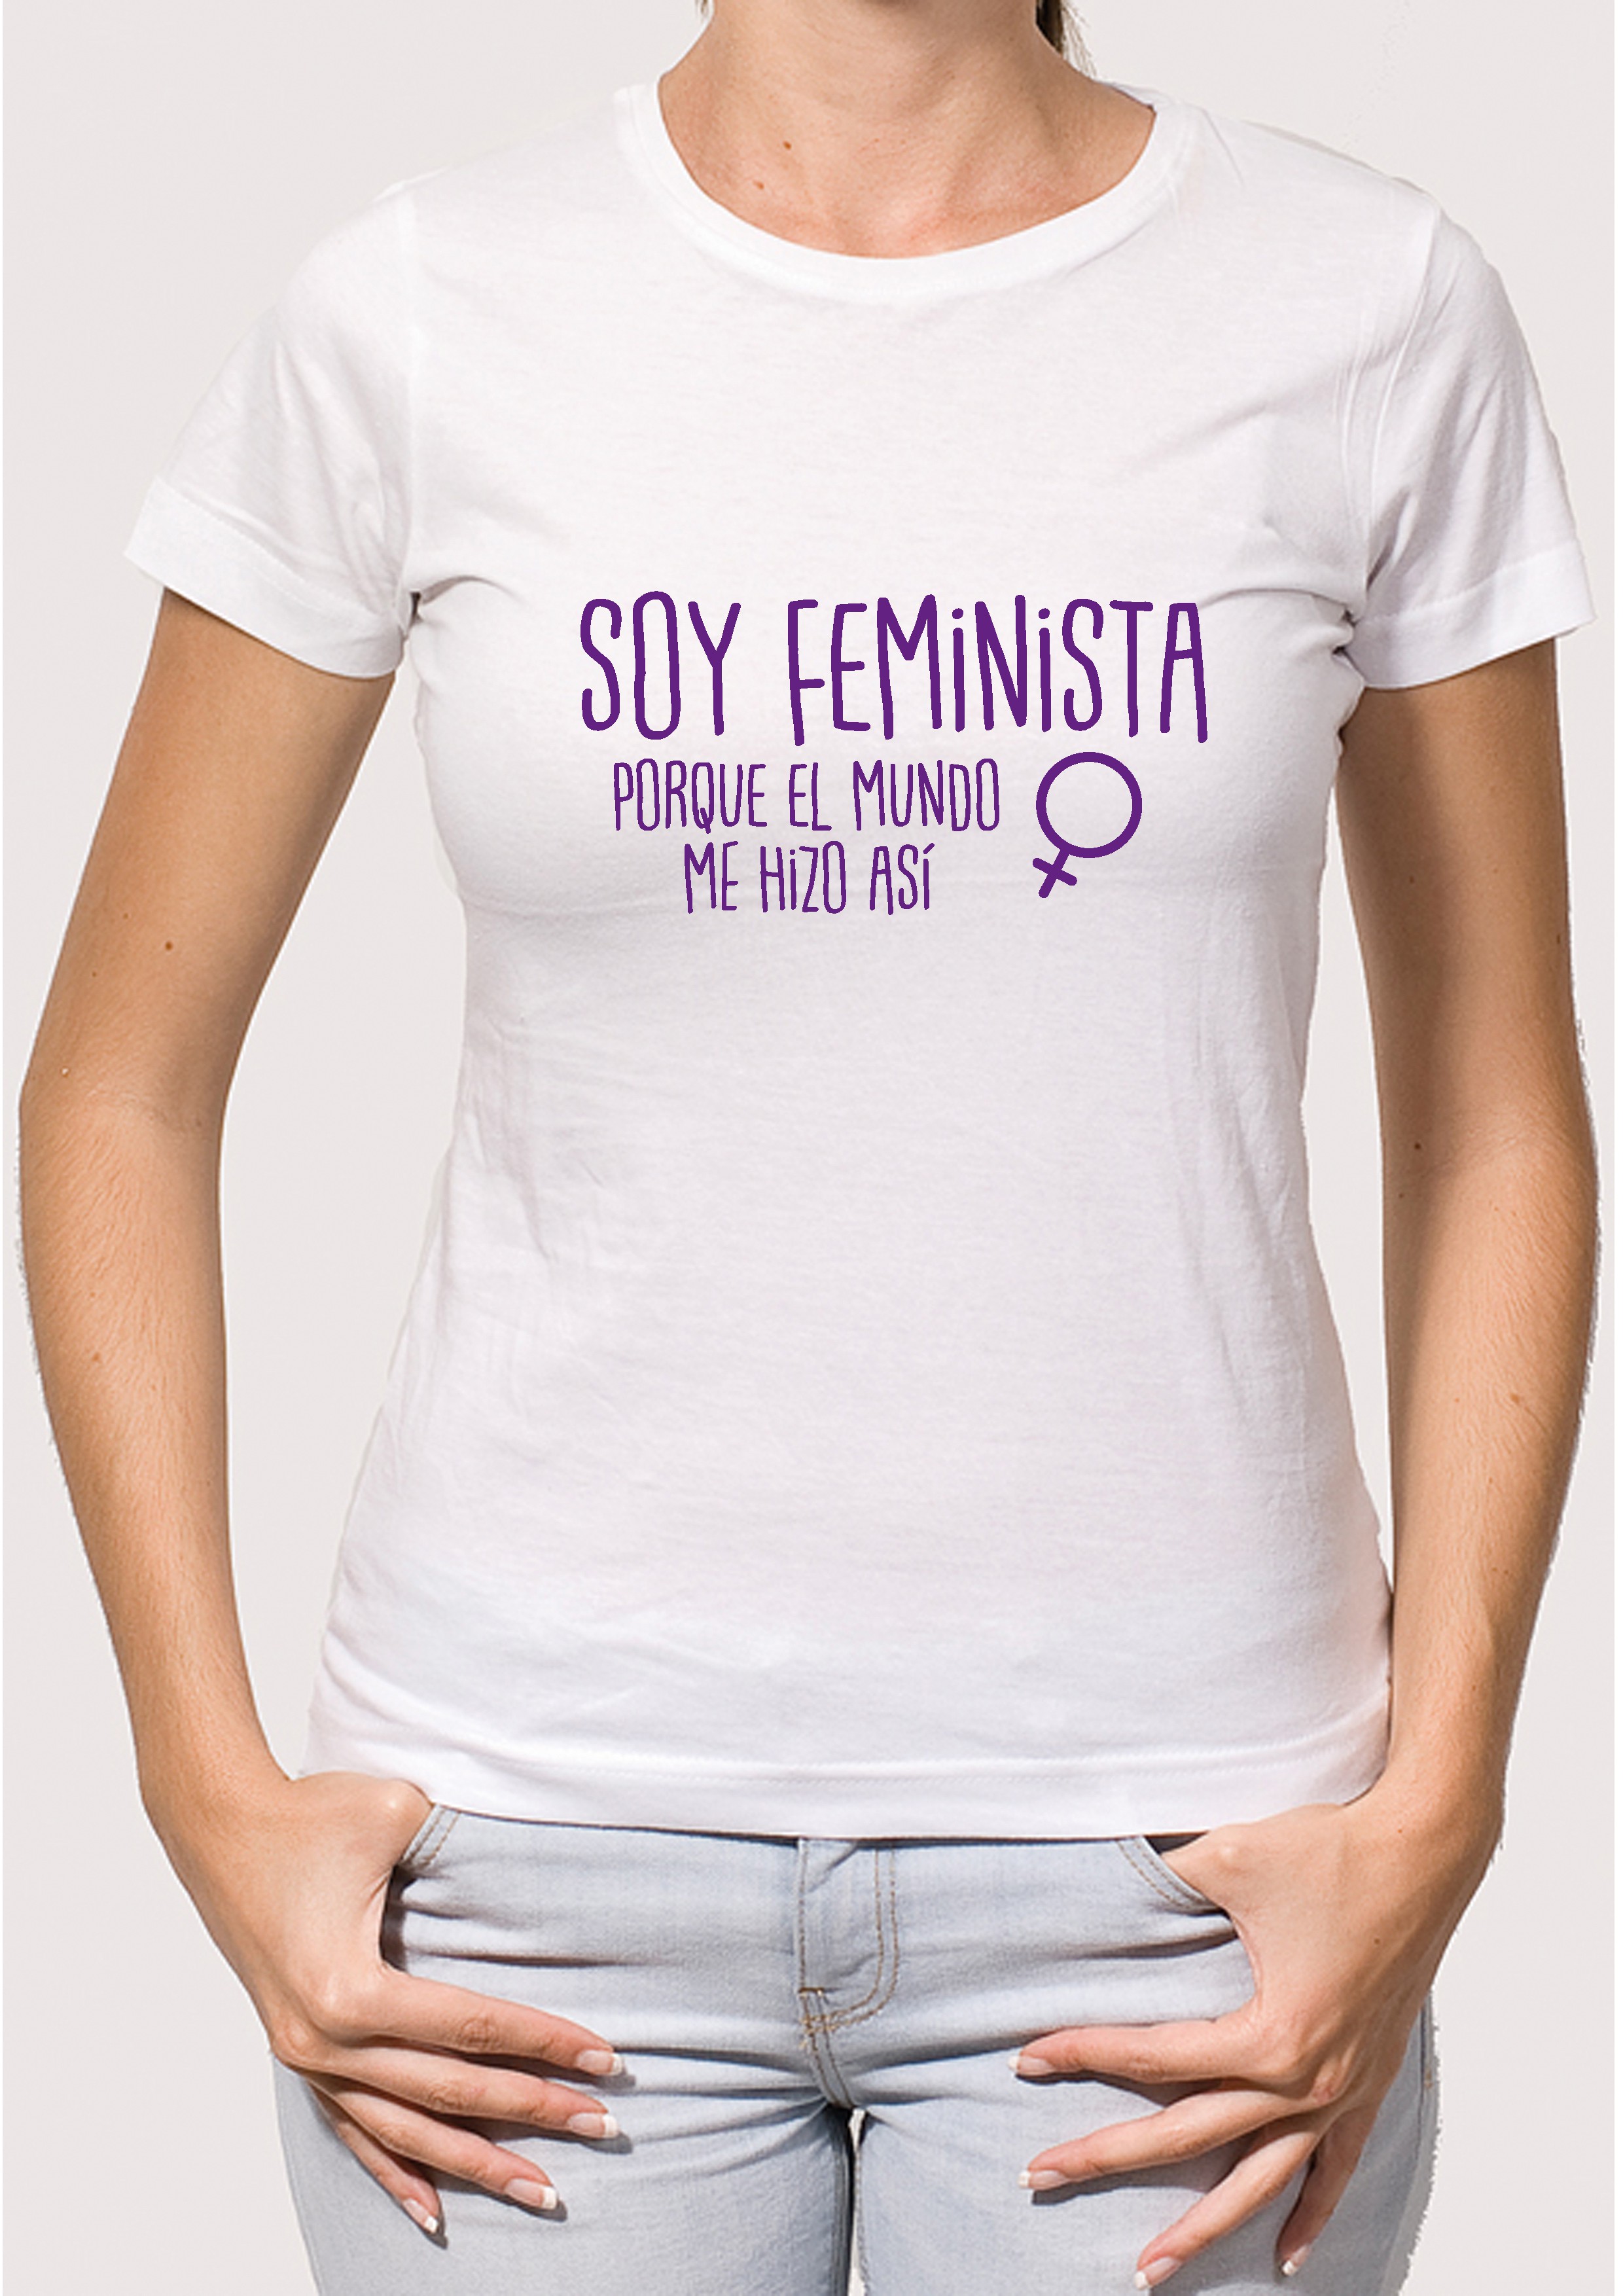 Camiseta Feminista Mundo Camisetas